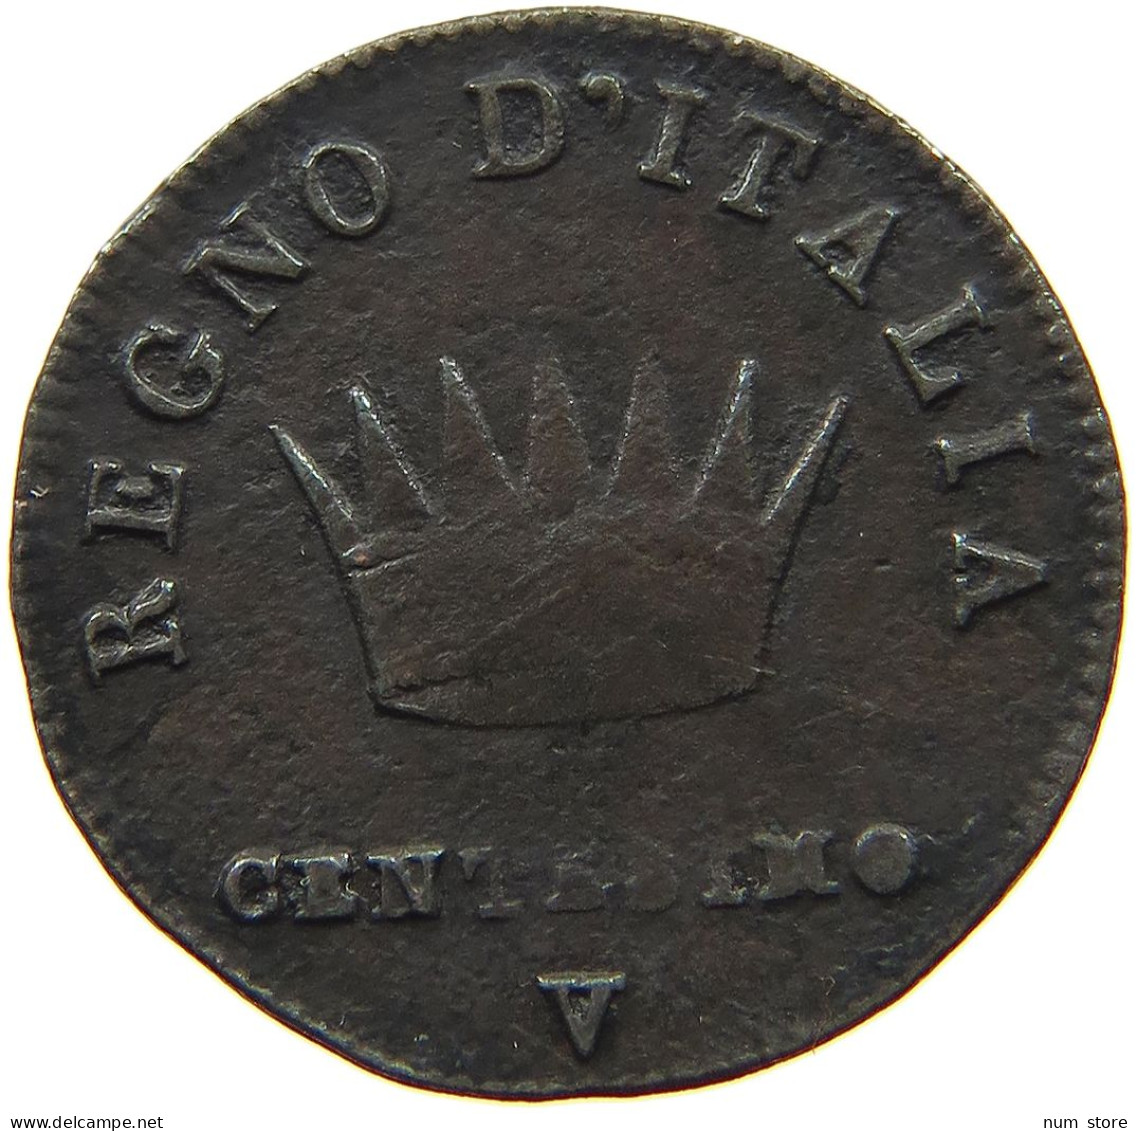 ITALY STATES NAPOLEON I. CENTESIMO 1808 V Napoleon I. (1804-1814, 1815) #t144 0887 - Napoleonic